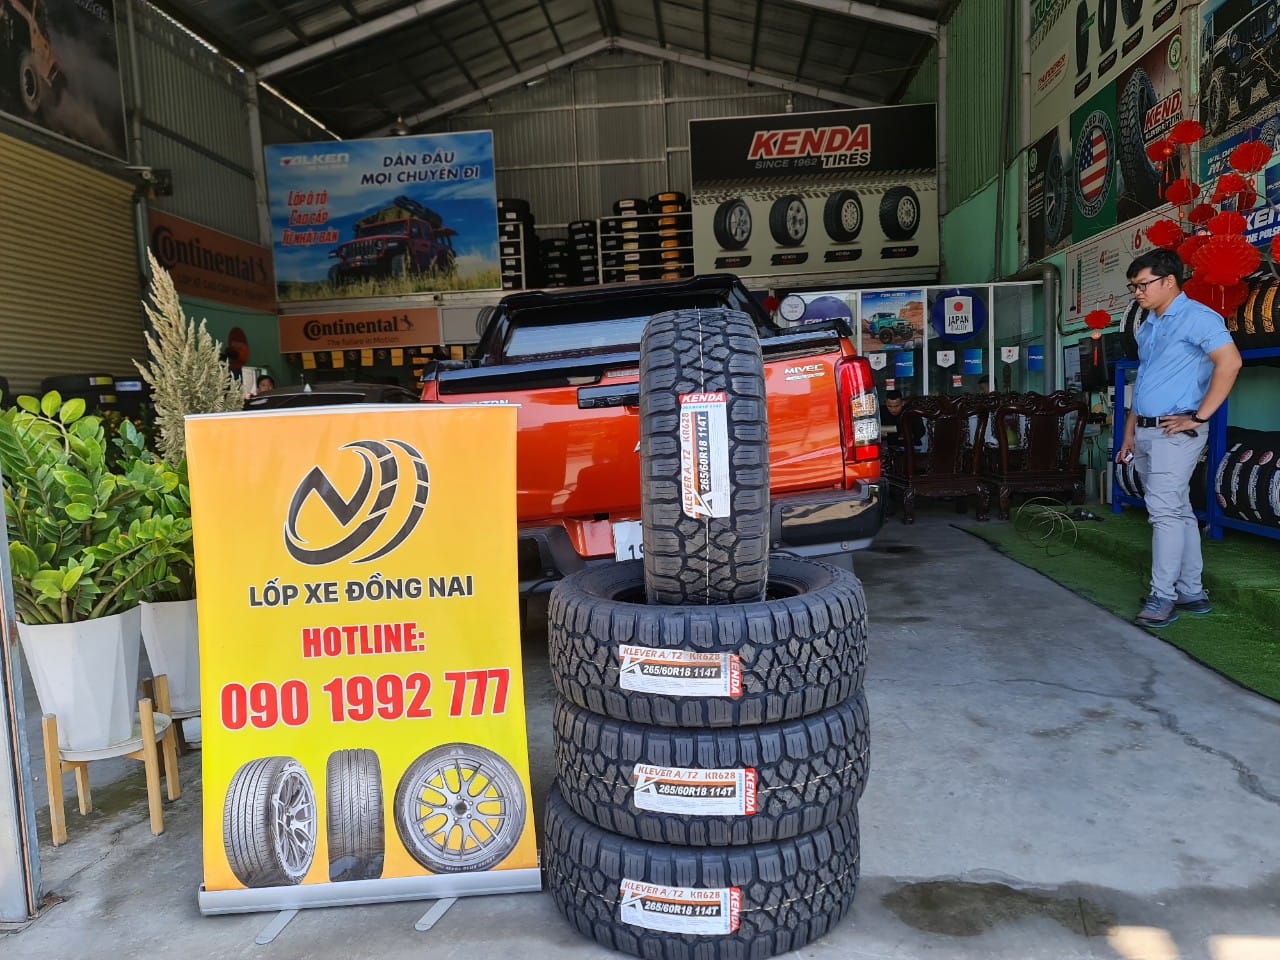 TƯ VẤN : Thay lốp xe Mitsubishi Triton. ở Biên Hoà, Đồng Nai.